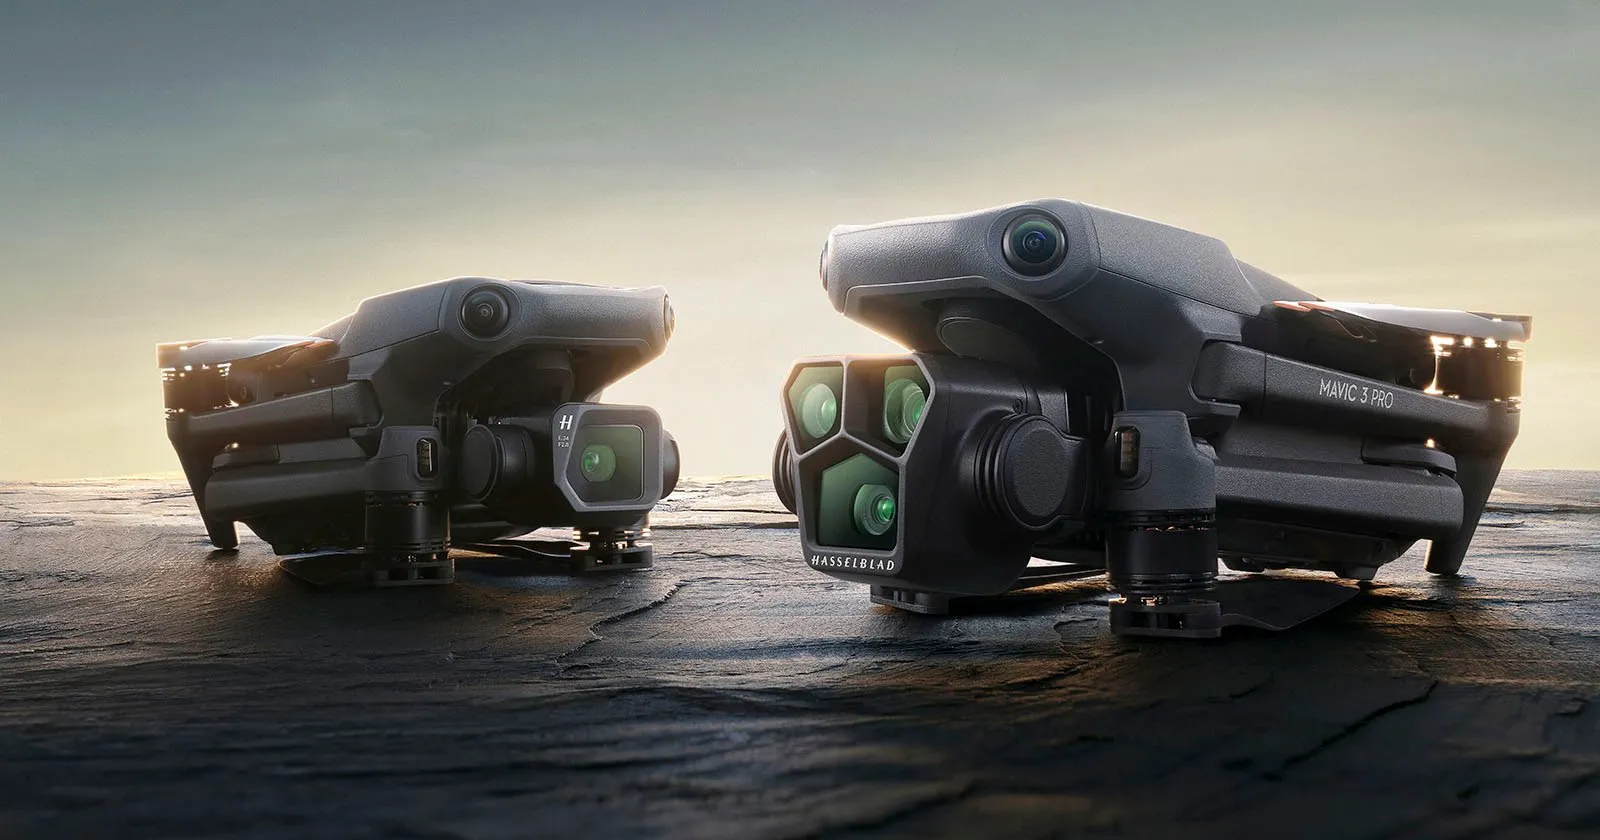 DJI ra mắt Mavic 3 Pro, dòng drone flagship và là chiếc drone đầu tiên trang bị 3 camera